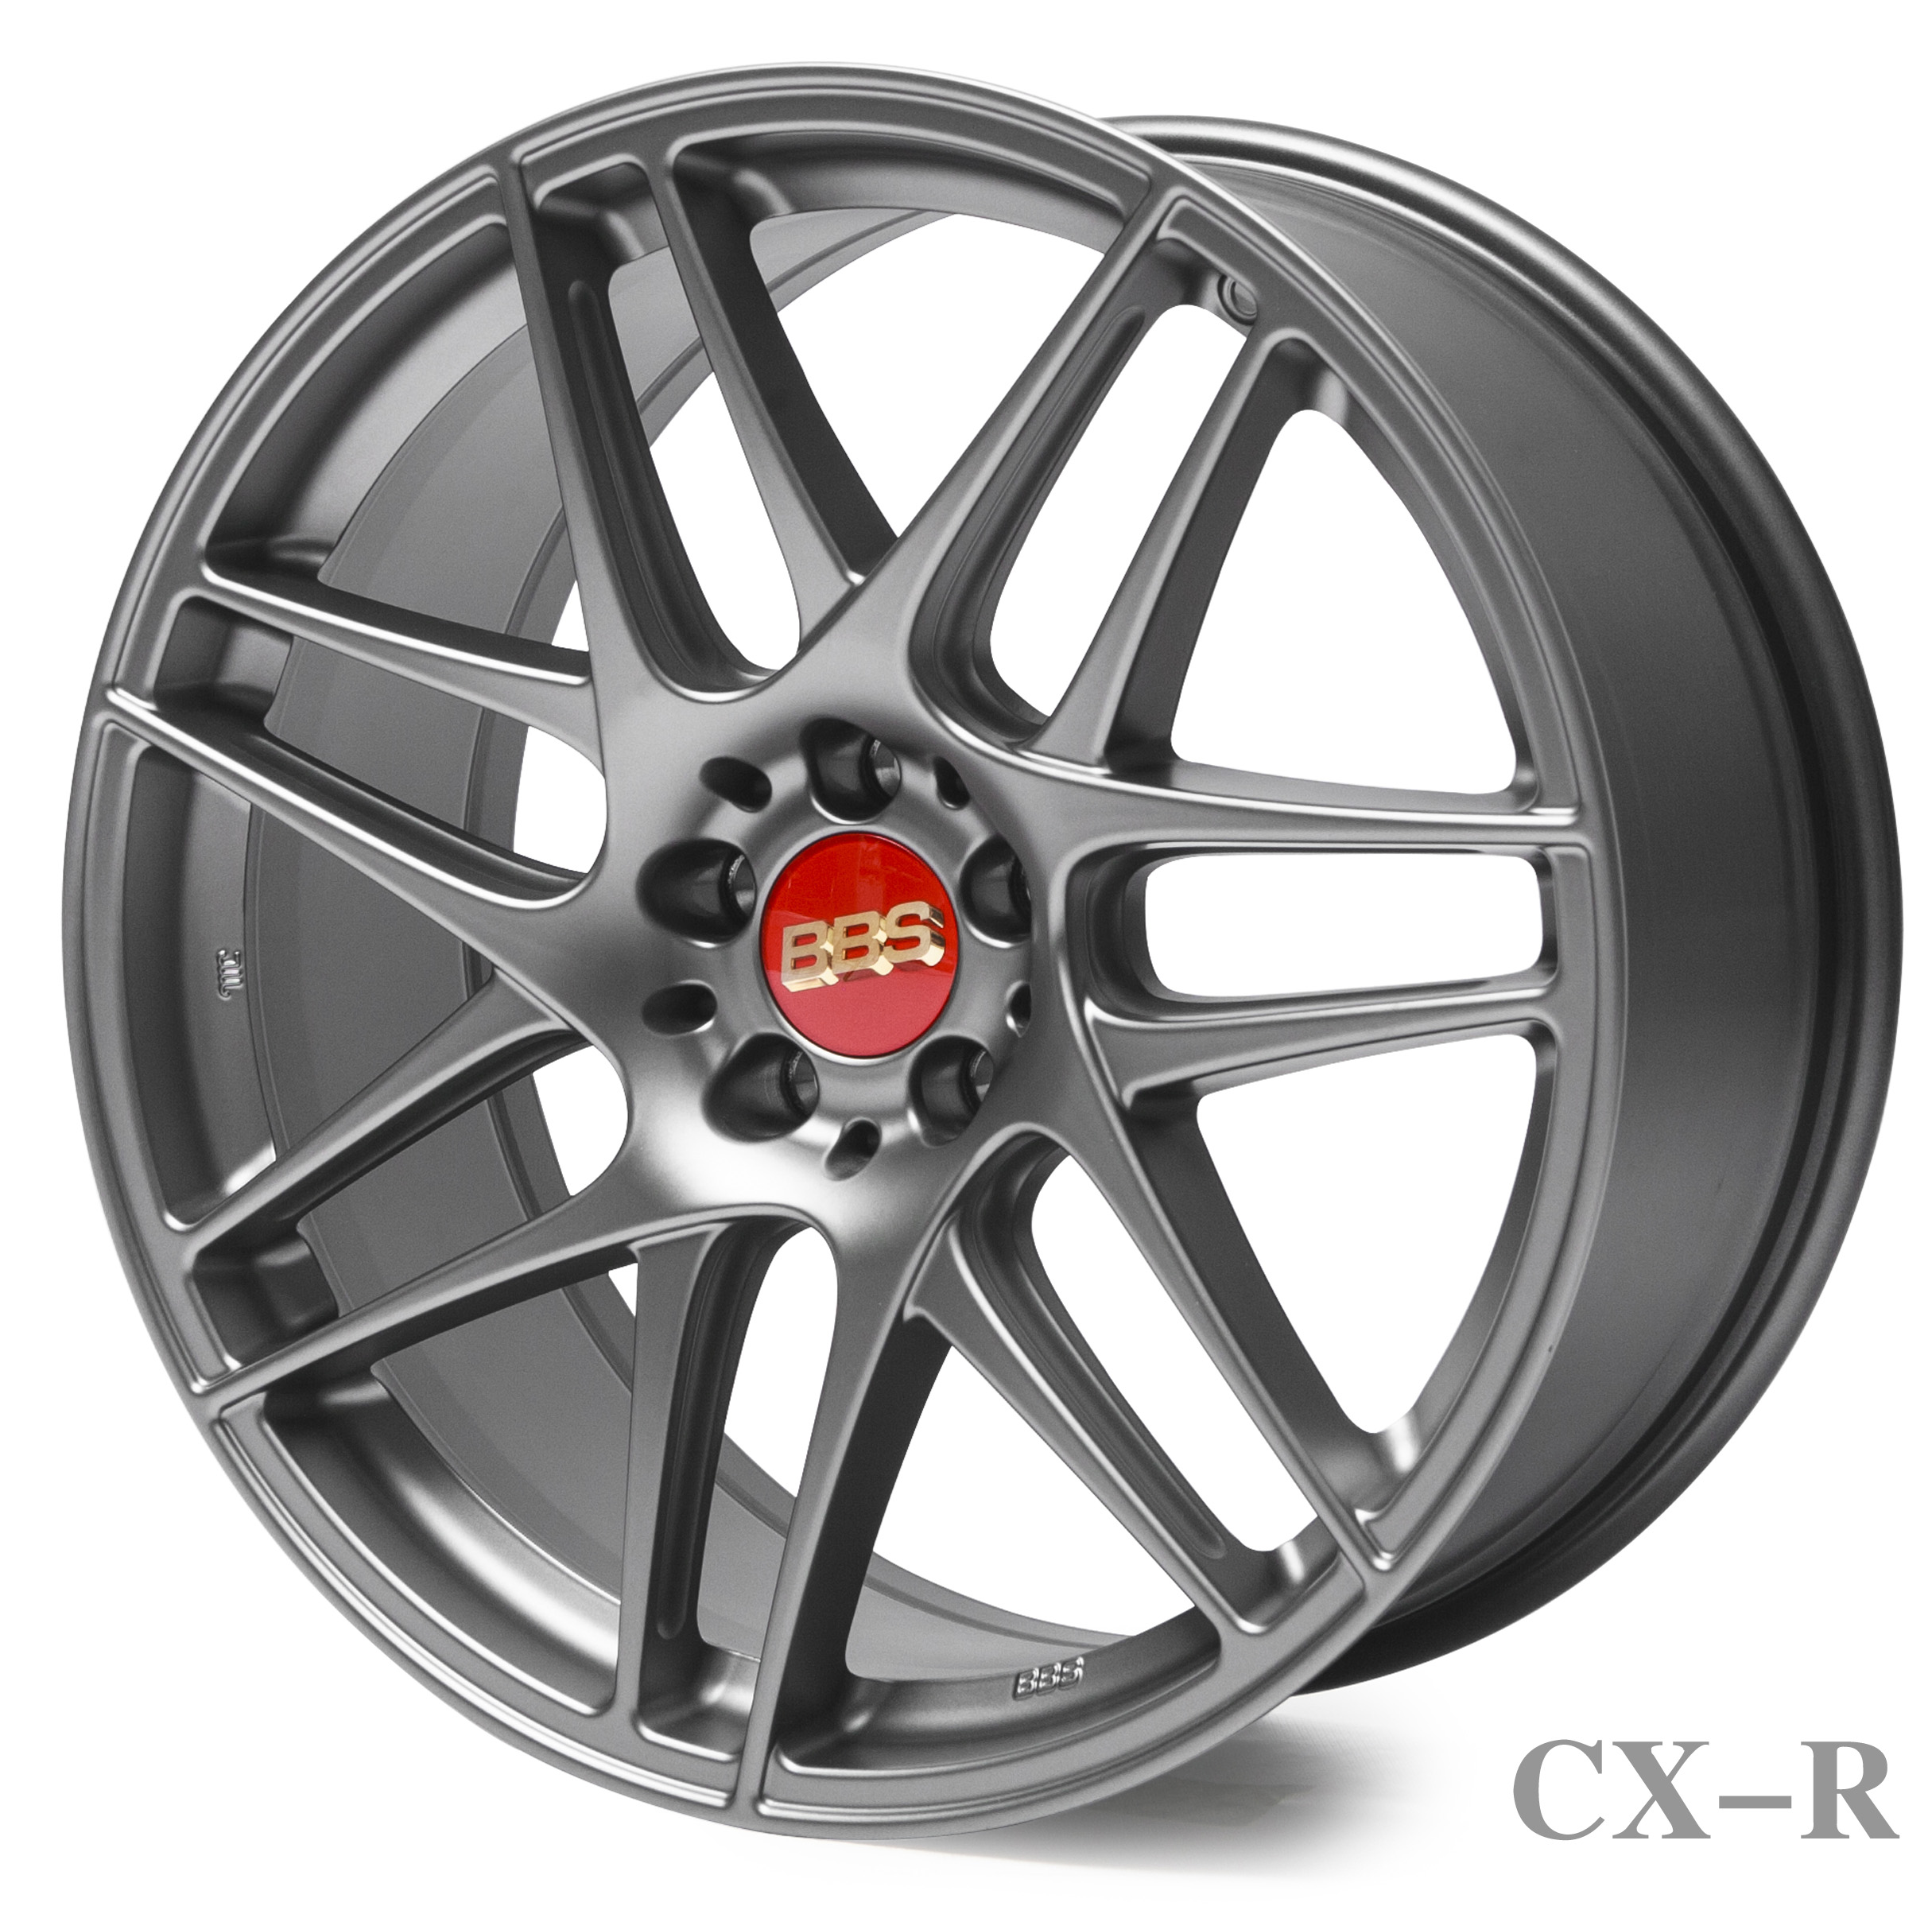 CX-R satin platinum